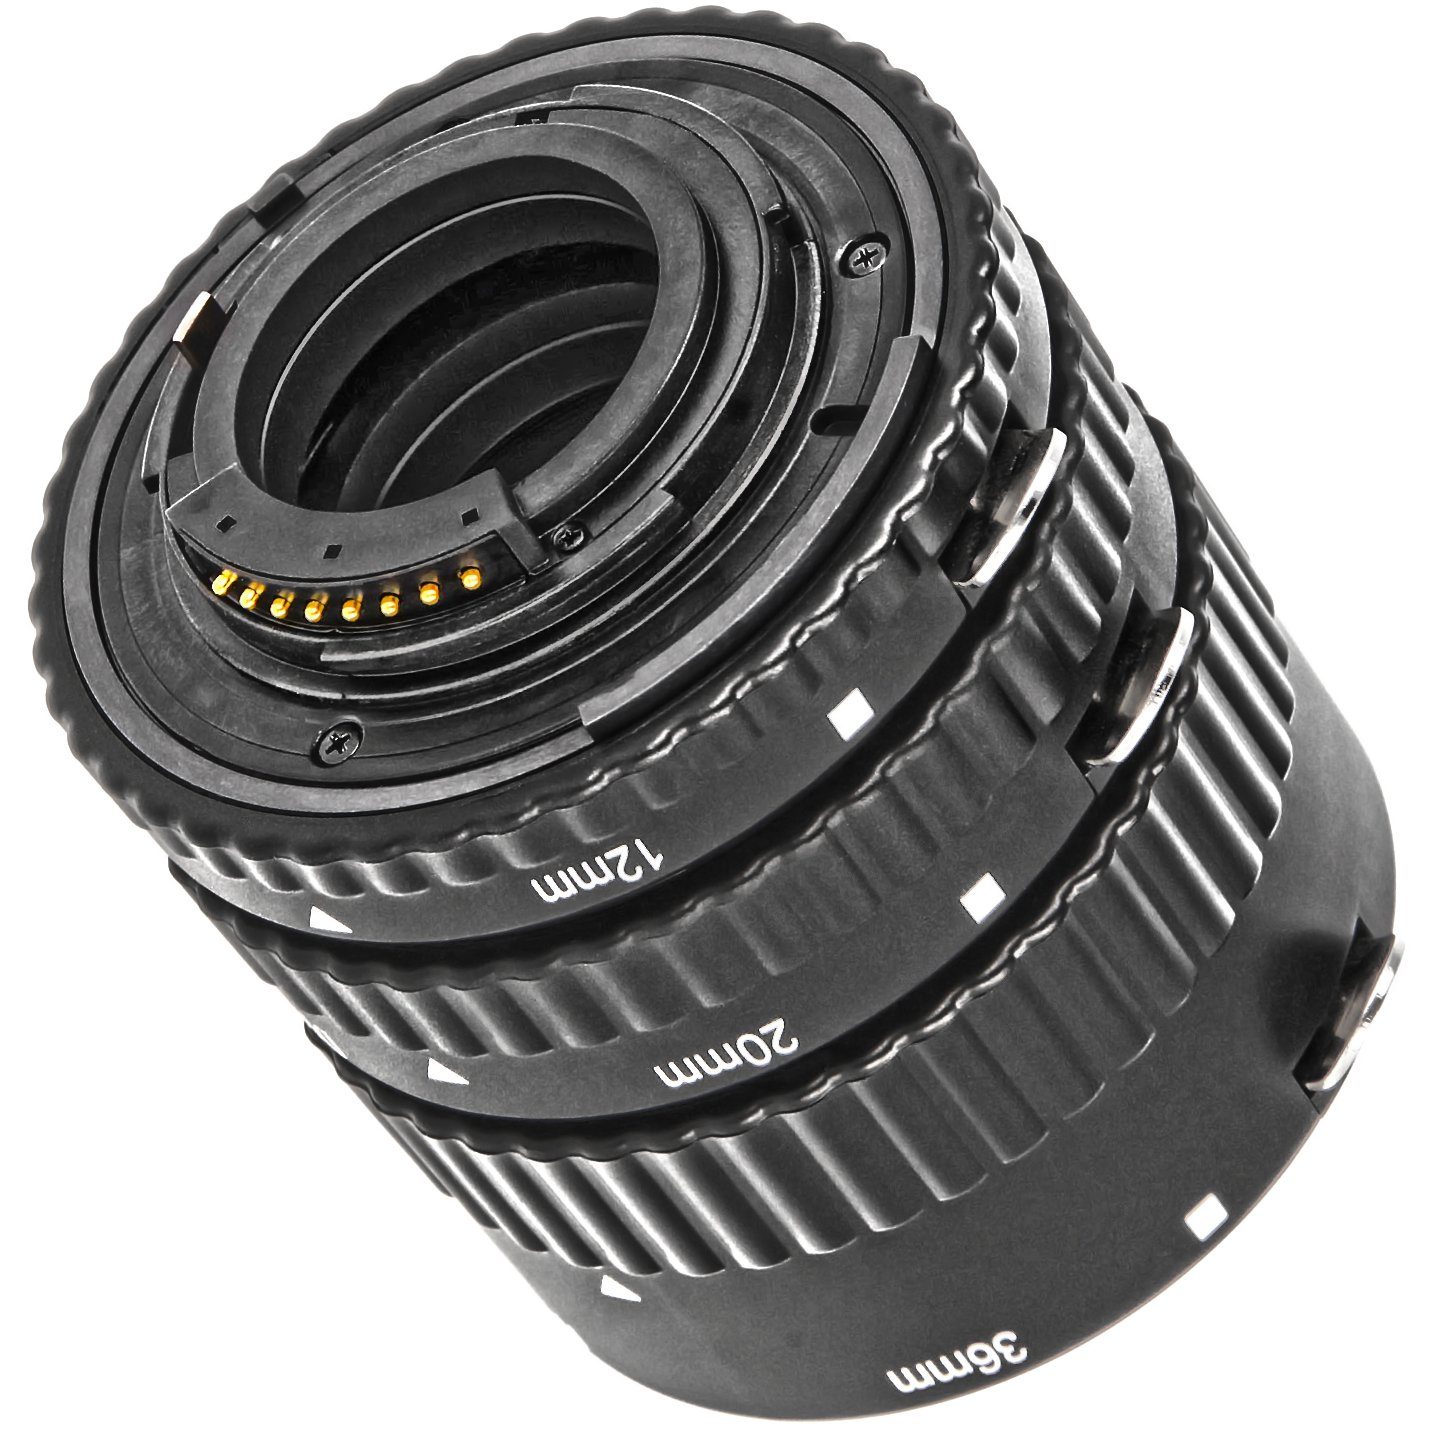 Meike Makroobjektiv mm 12/20/36 Zwischenringe Nikon Makrofotographie MK-N-AF-B Automatik -